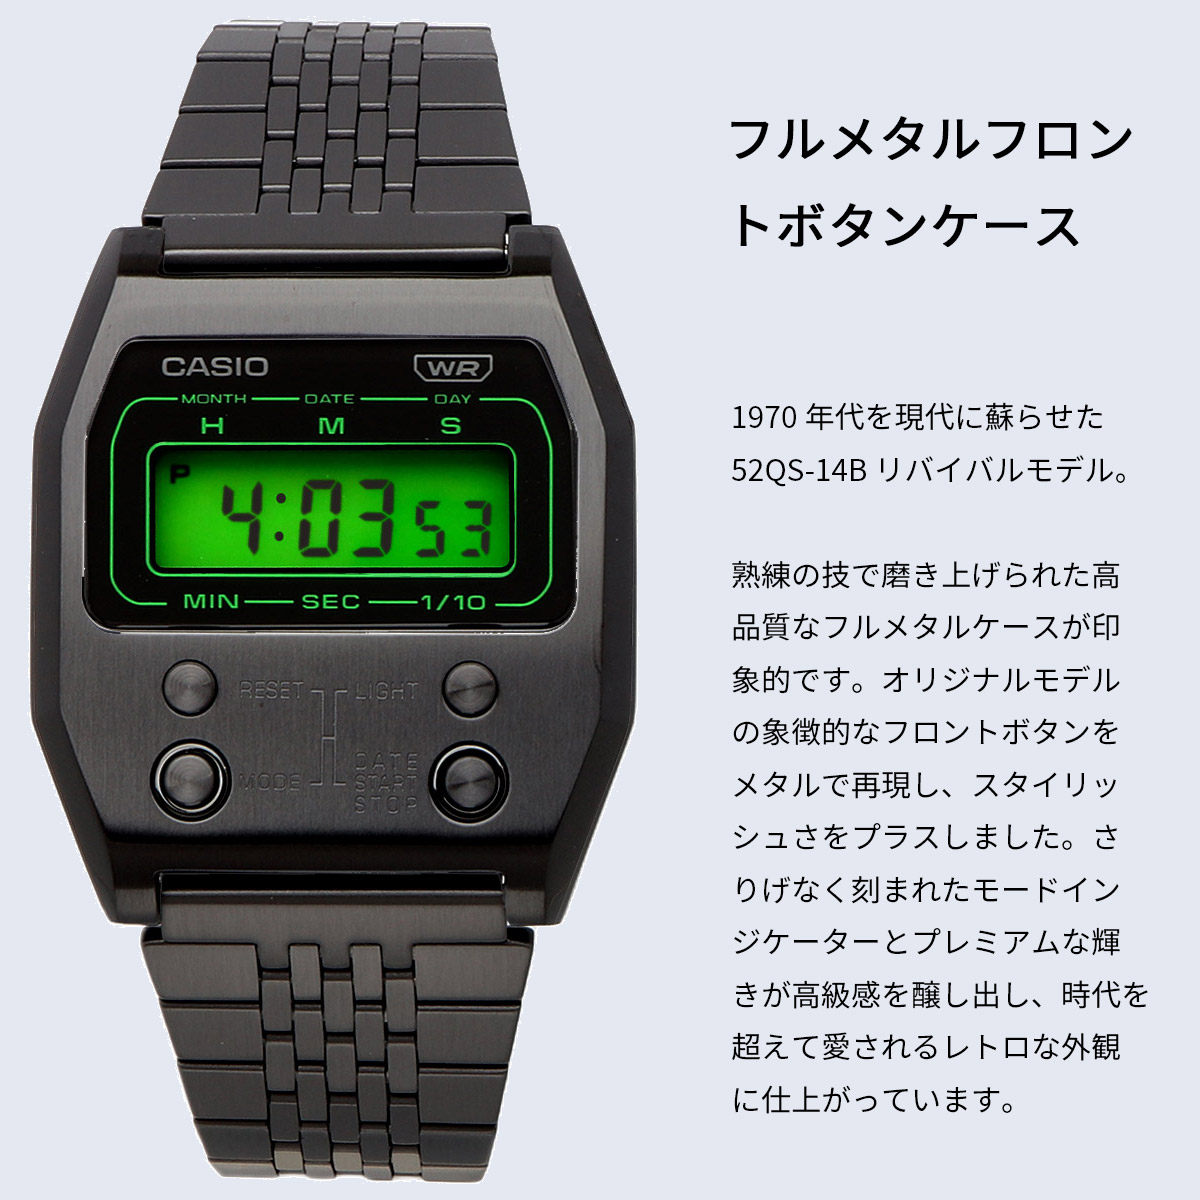 CASIO カシオ 腕時計 メンズ レディース チープカシオ チプカシ 海外モデル 52QS-14B 復刻モデル デジタル A1100B-1